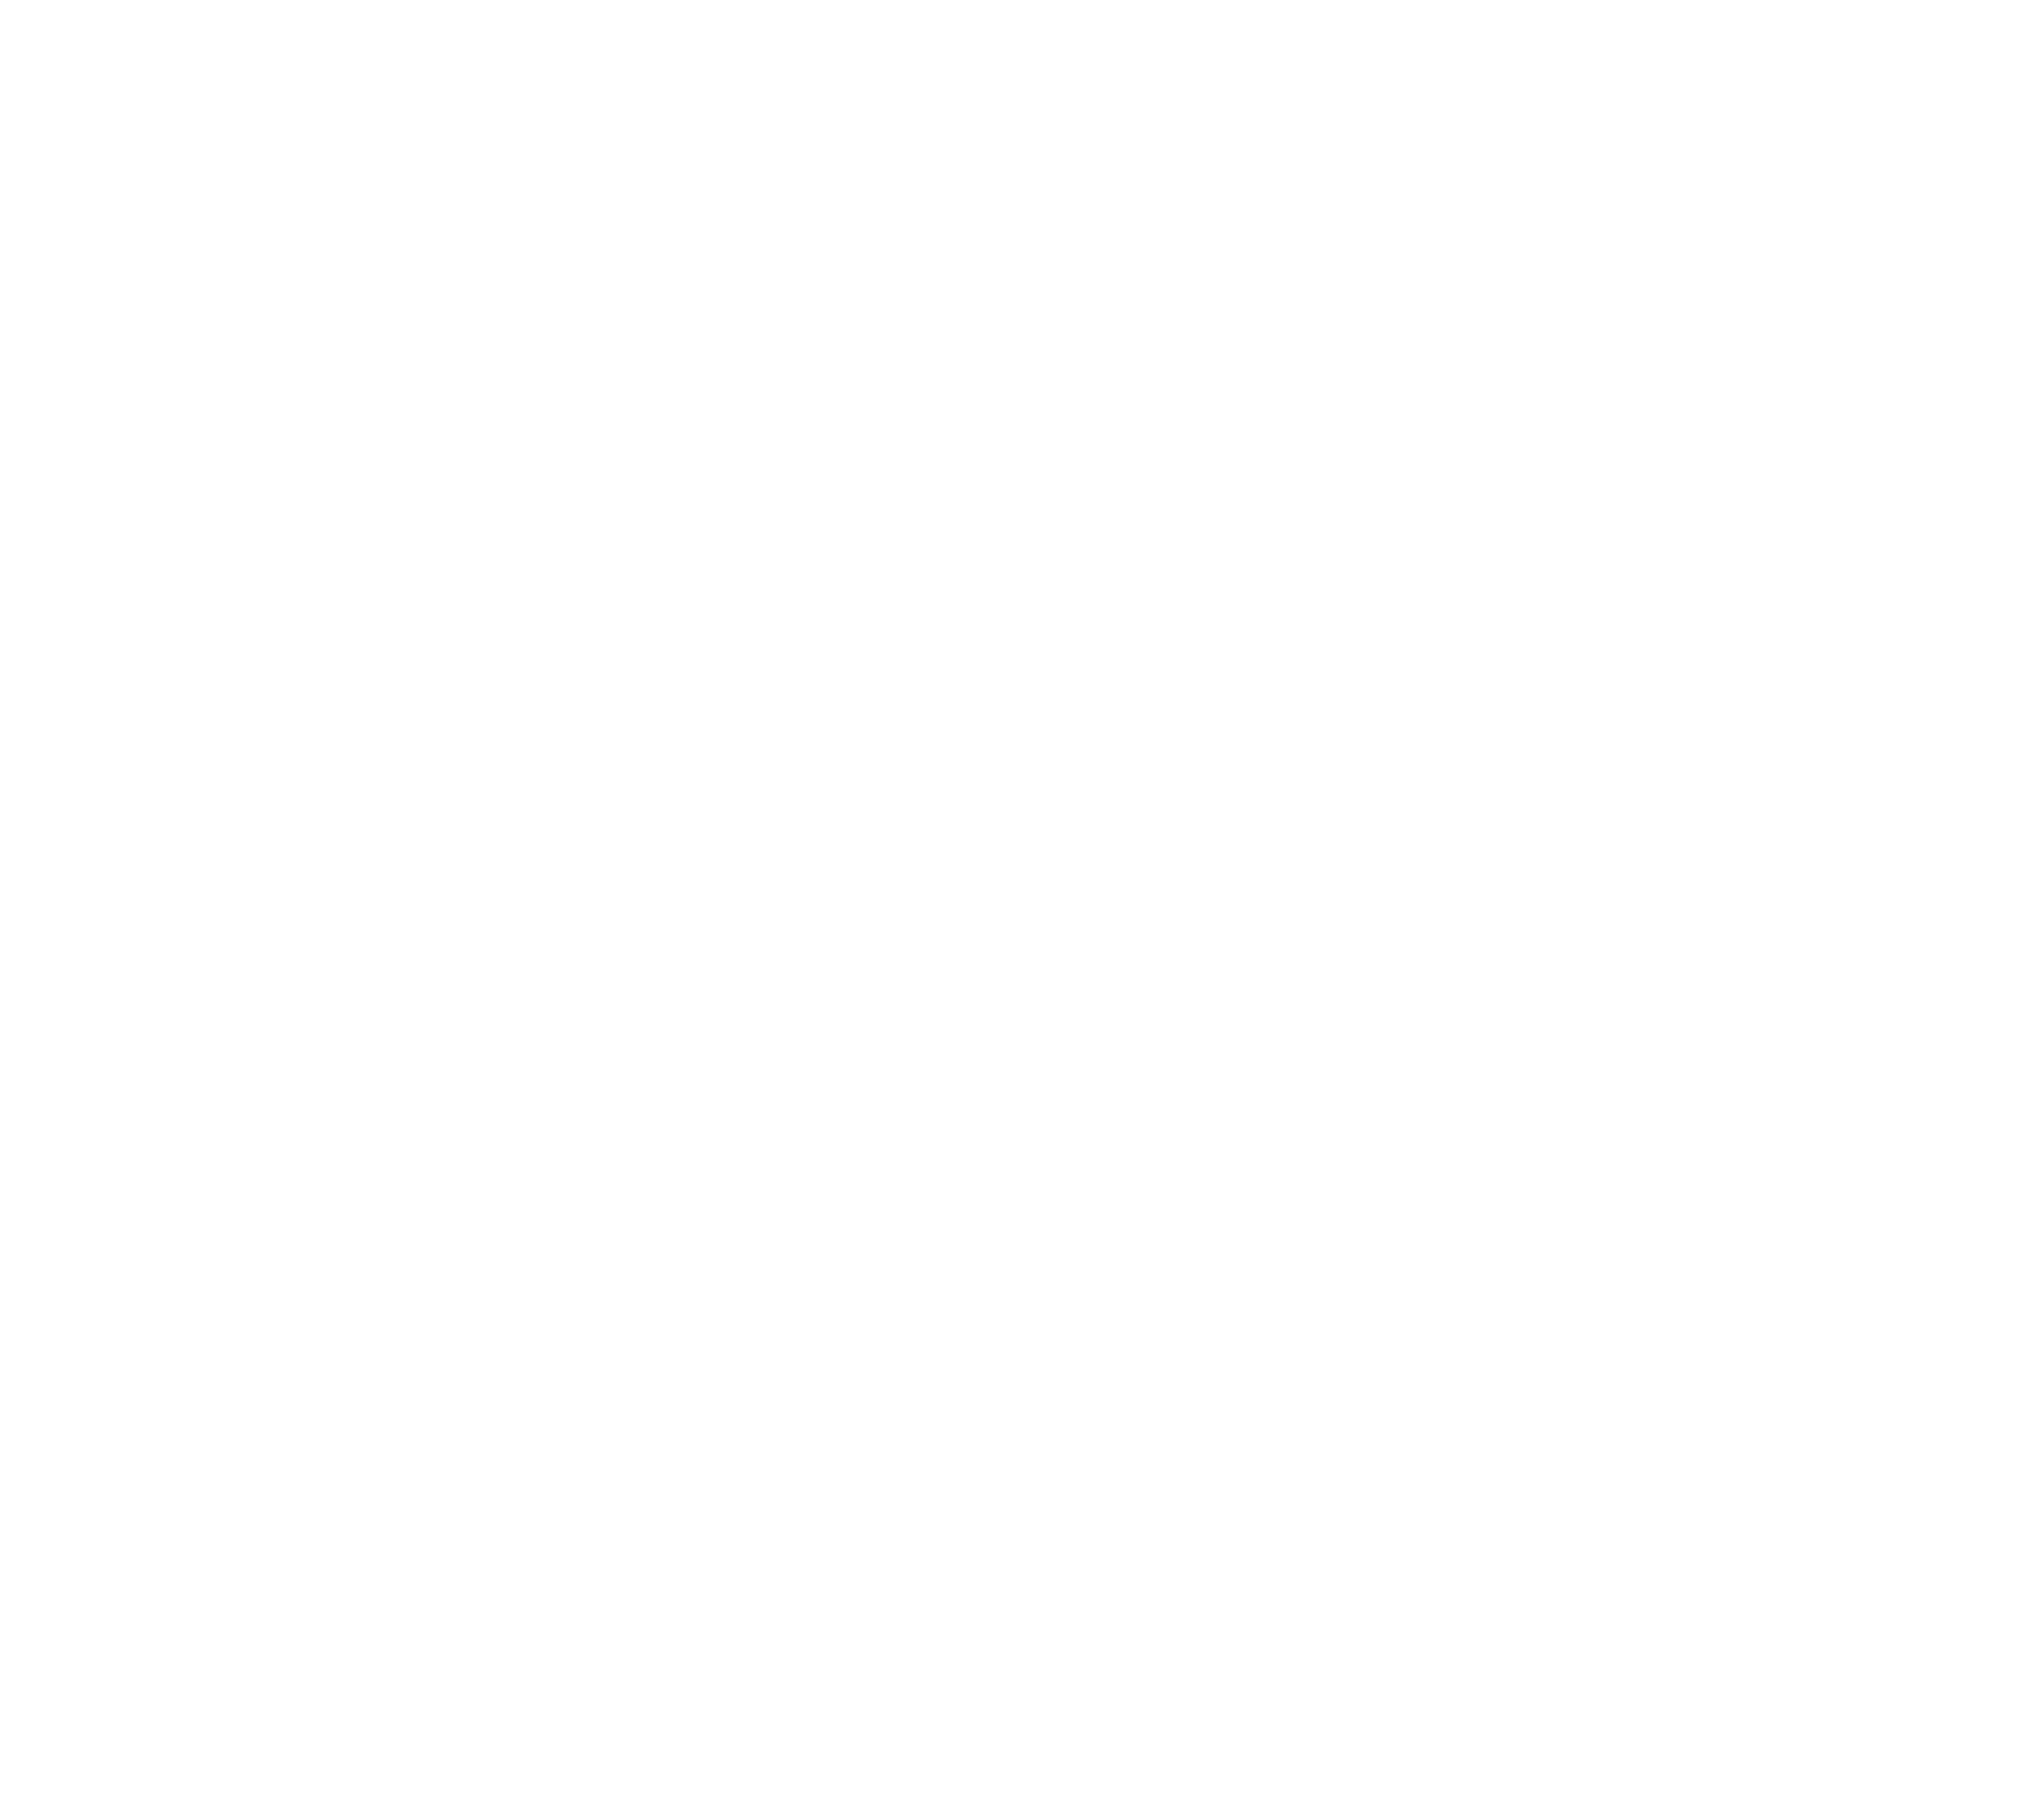 The Austin Doggery